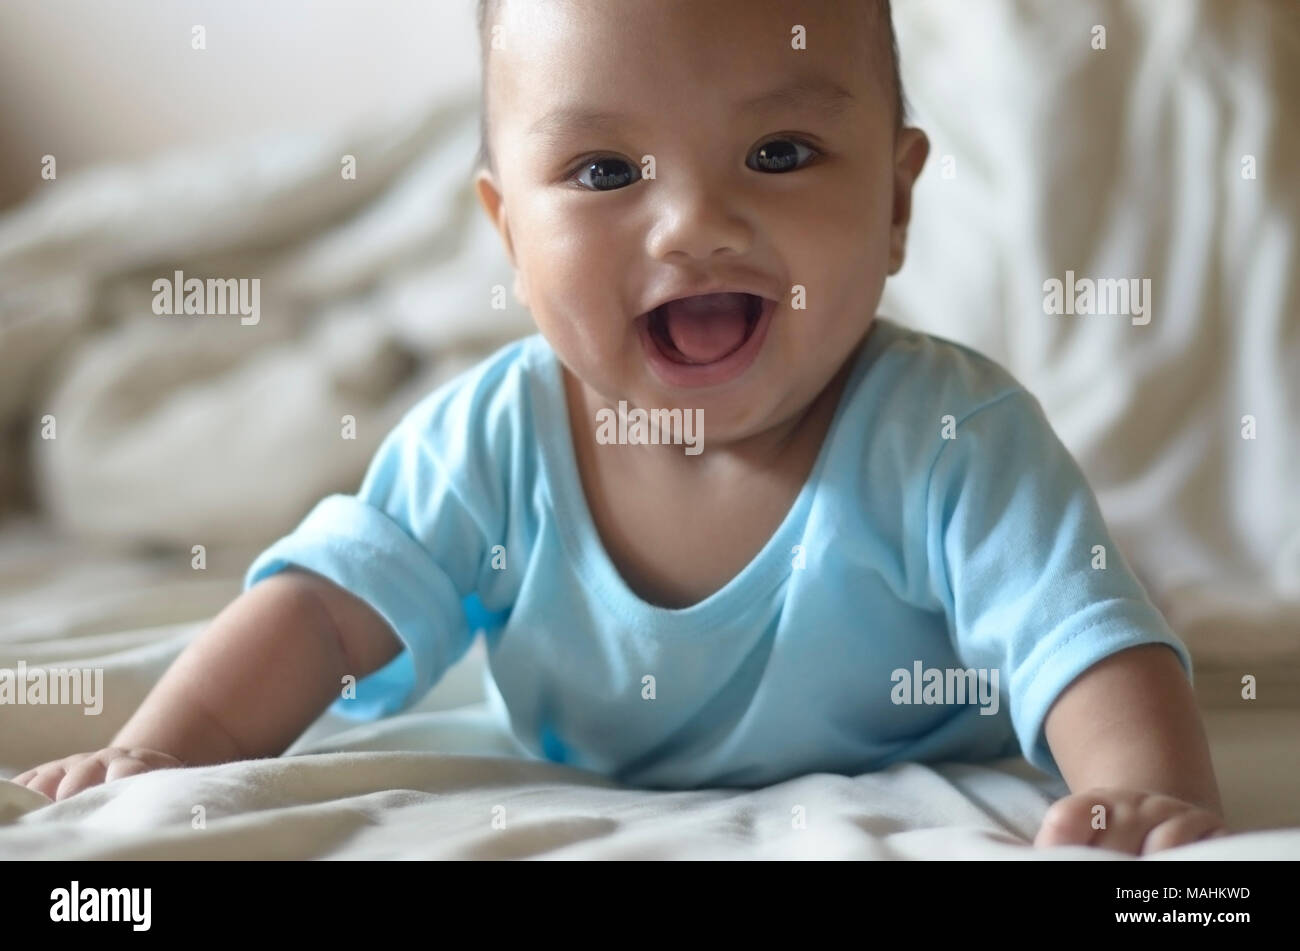 Der Fotograf eigenen Sohn fotografiert, wenn er 5 Monate alt war. Das Kind wird lächelnd in einem semi-bauchlage oder halb-liegend auf seinen Bauch. Stockfoto